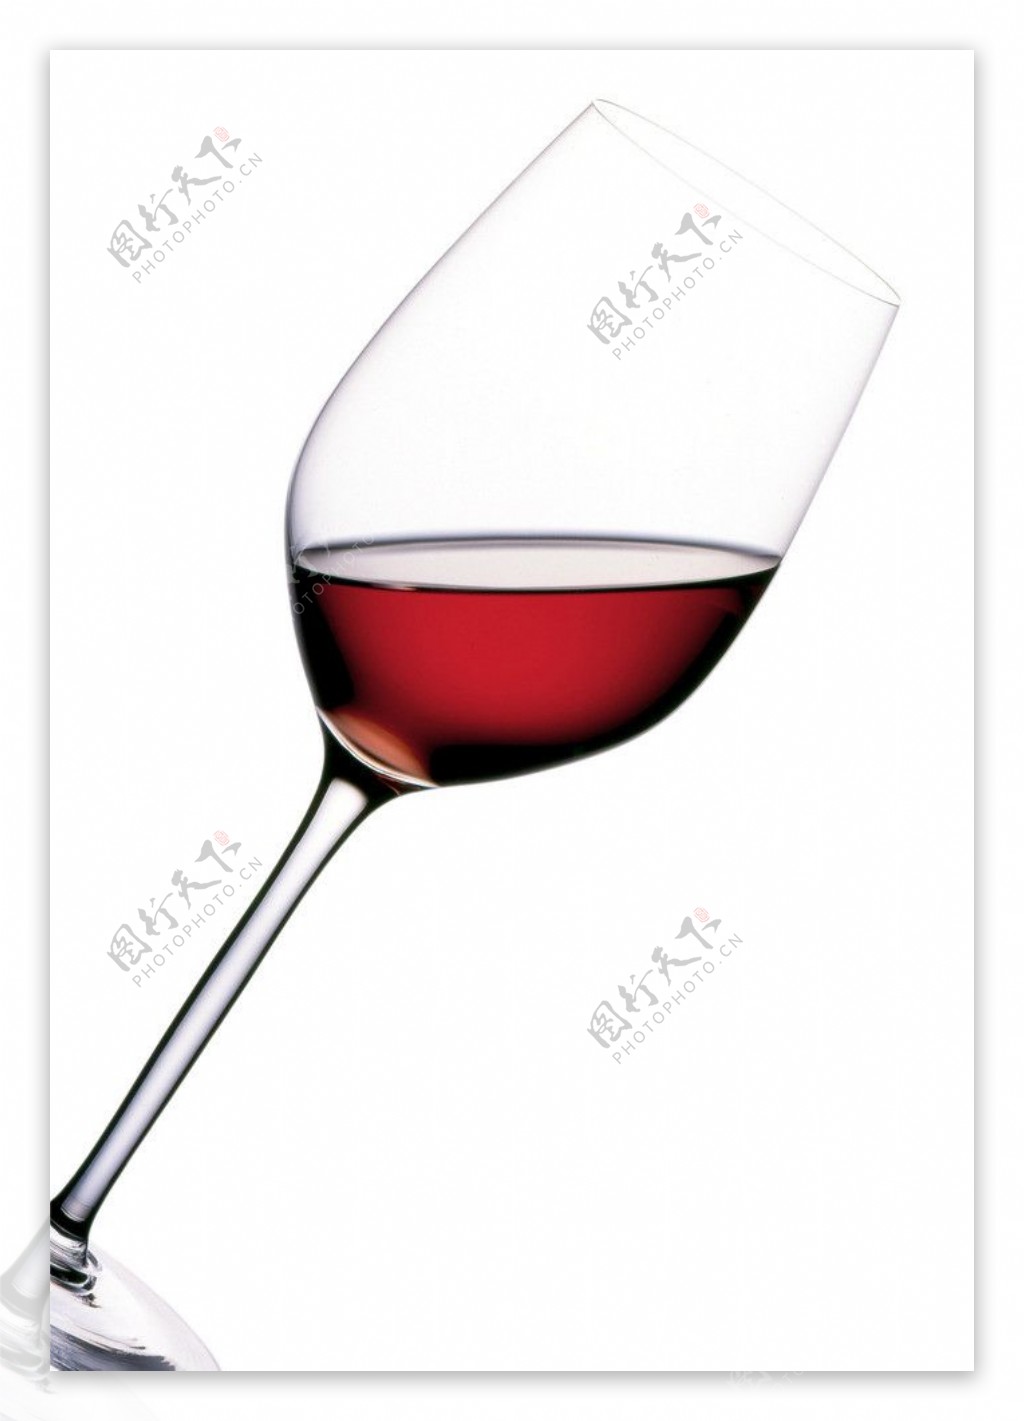 红酒红酒杯图片